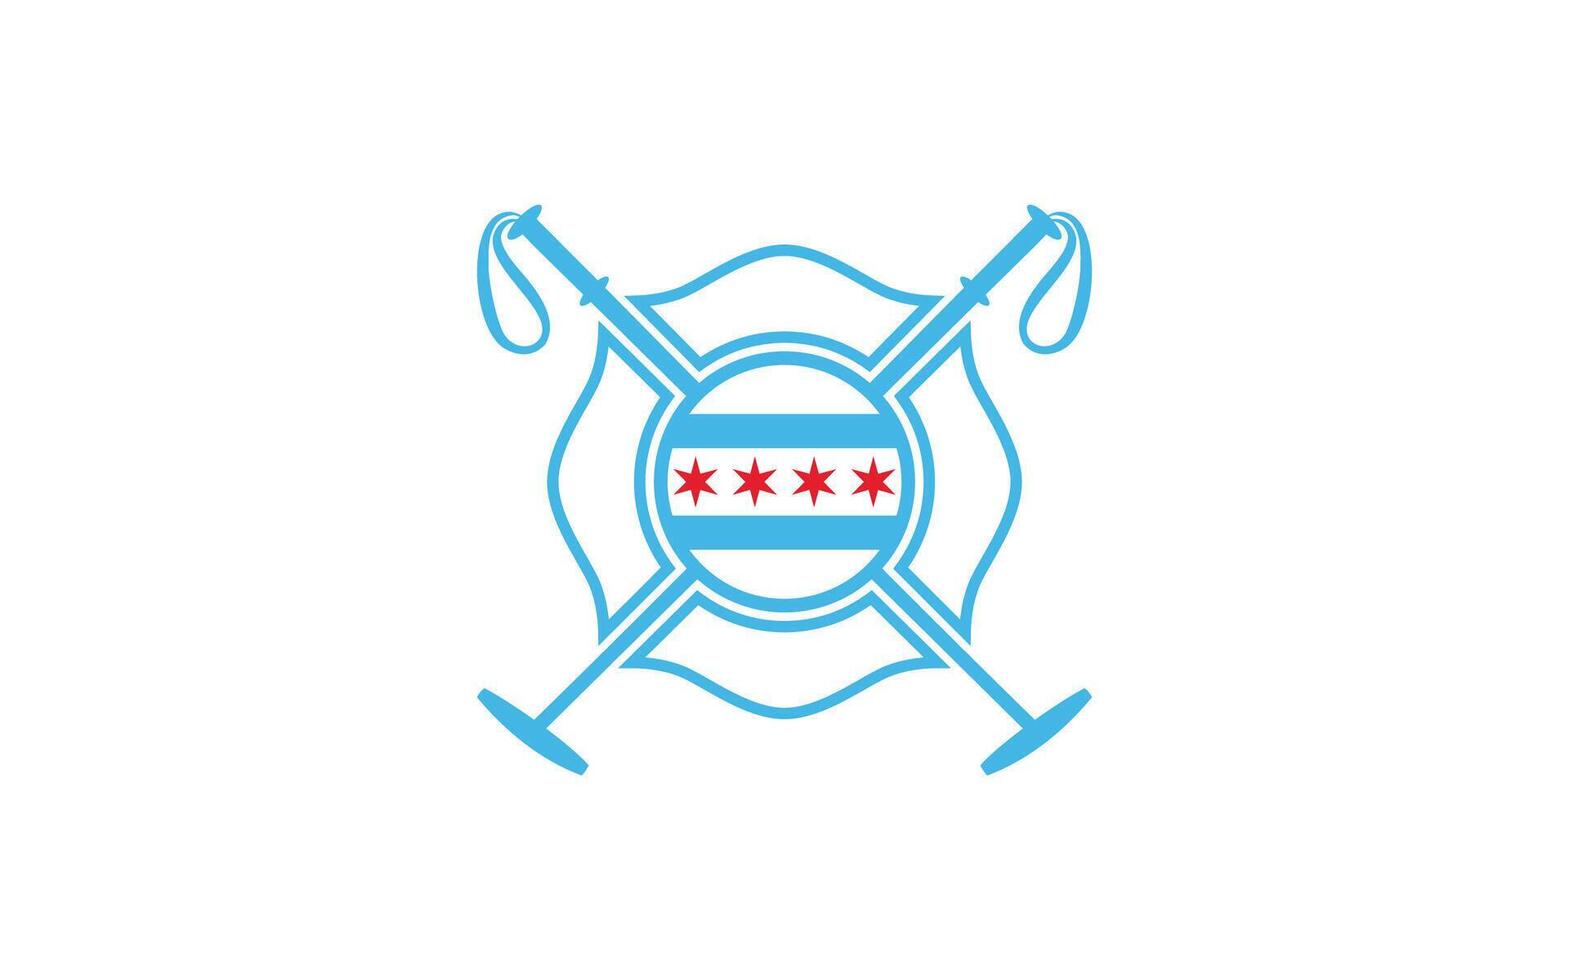 emblema Insignia chicago polo logo, chicago polo logo Clásico retro estilo vector